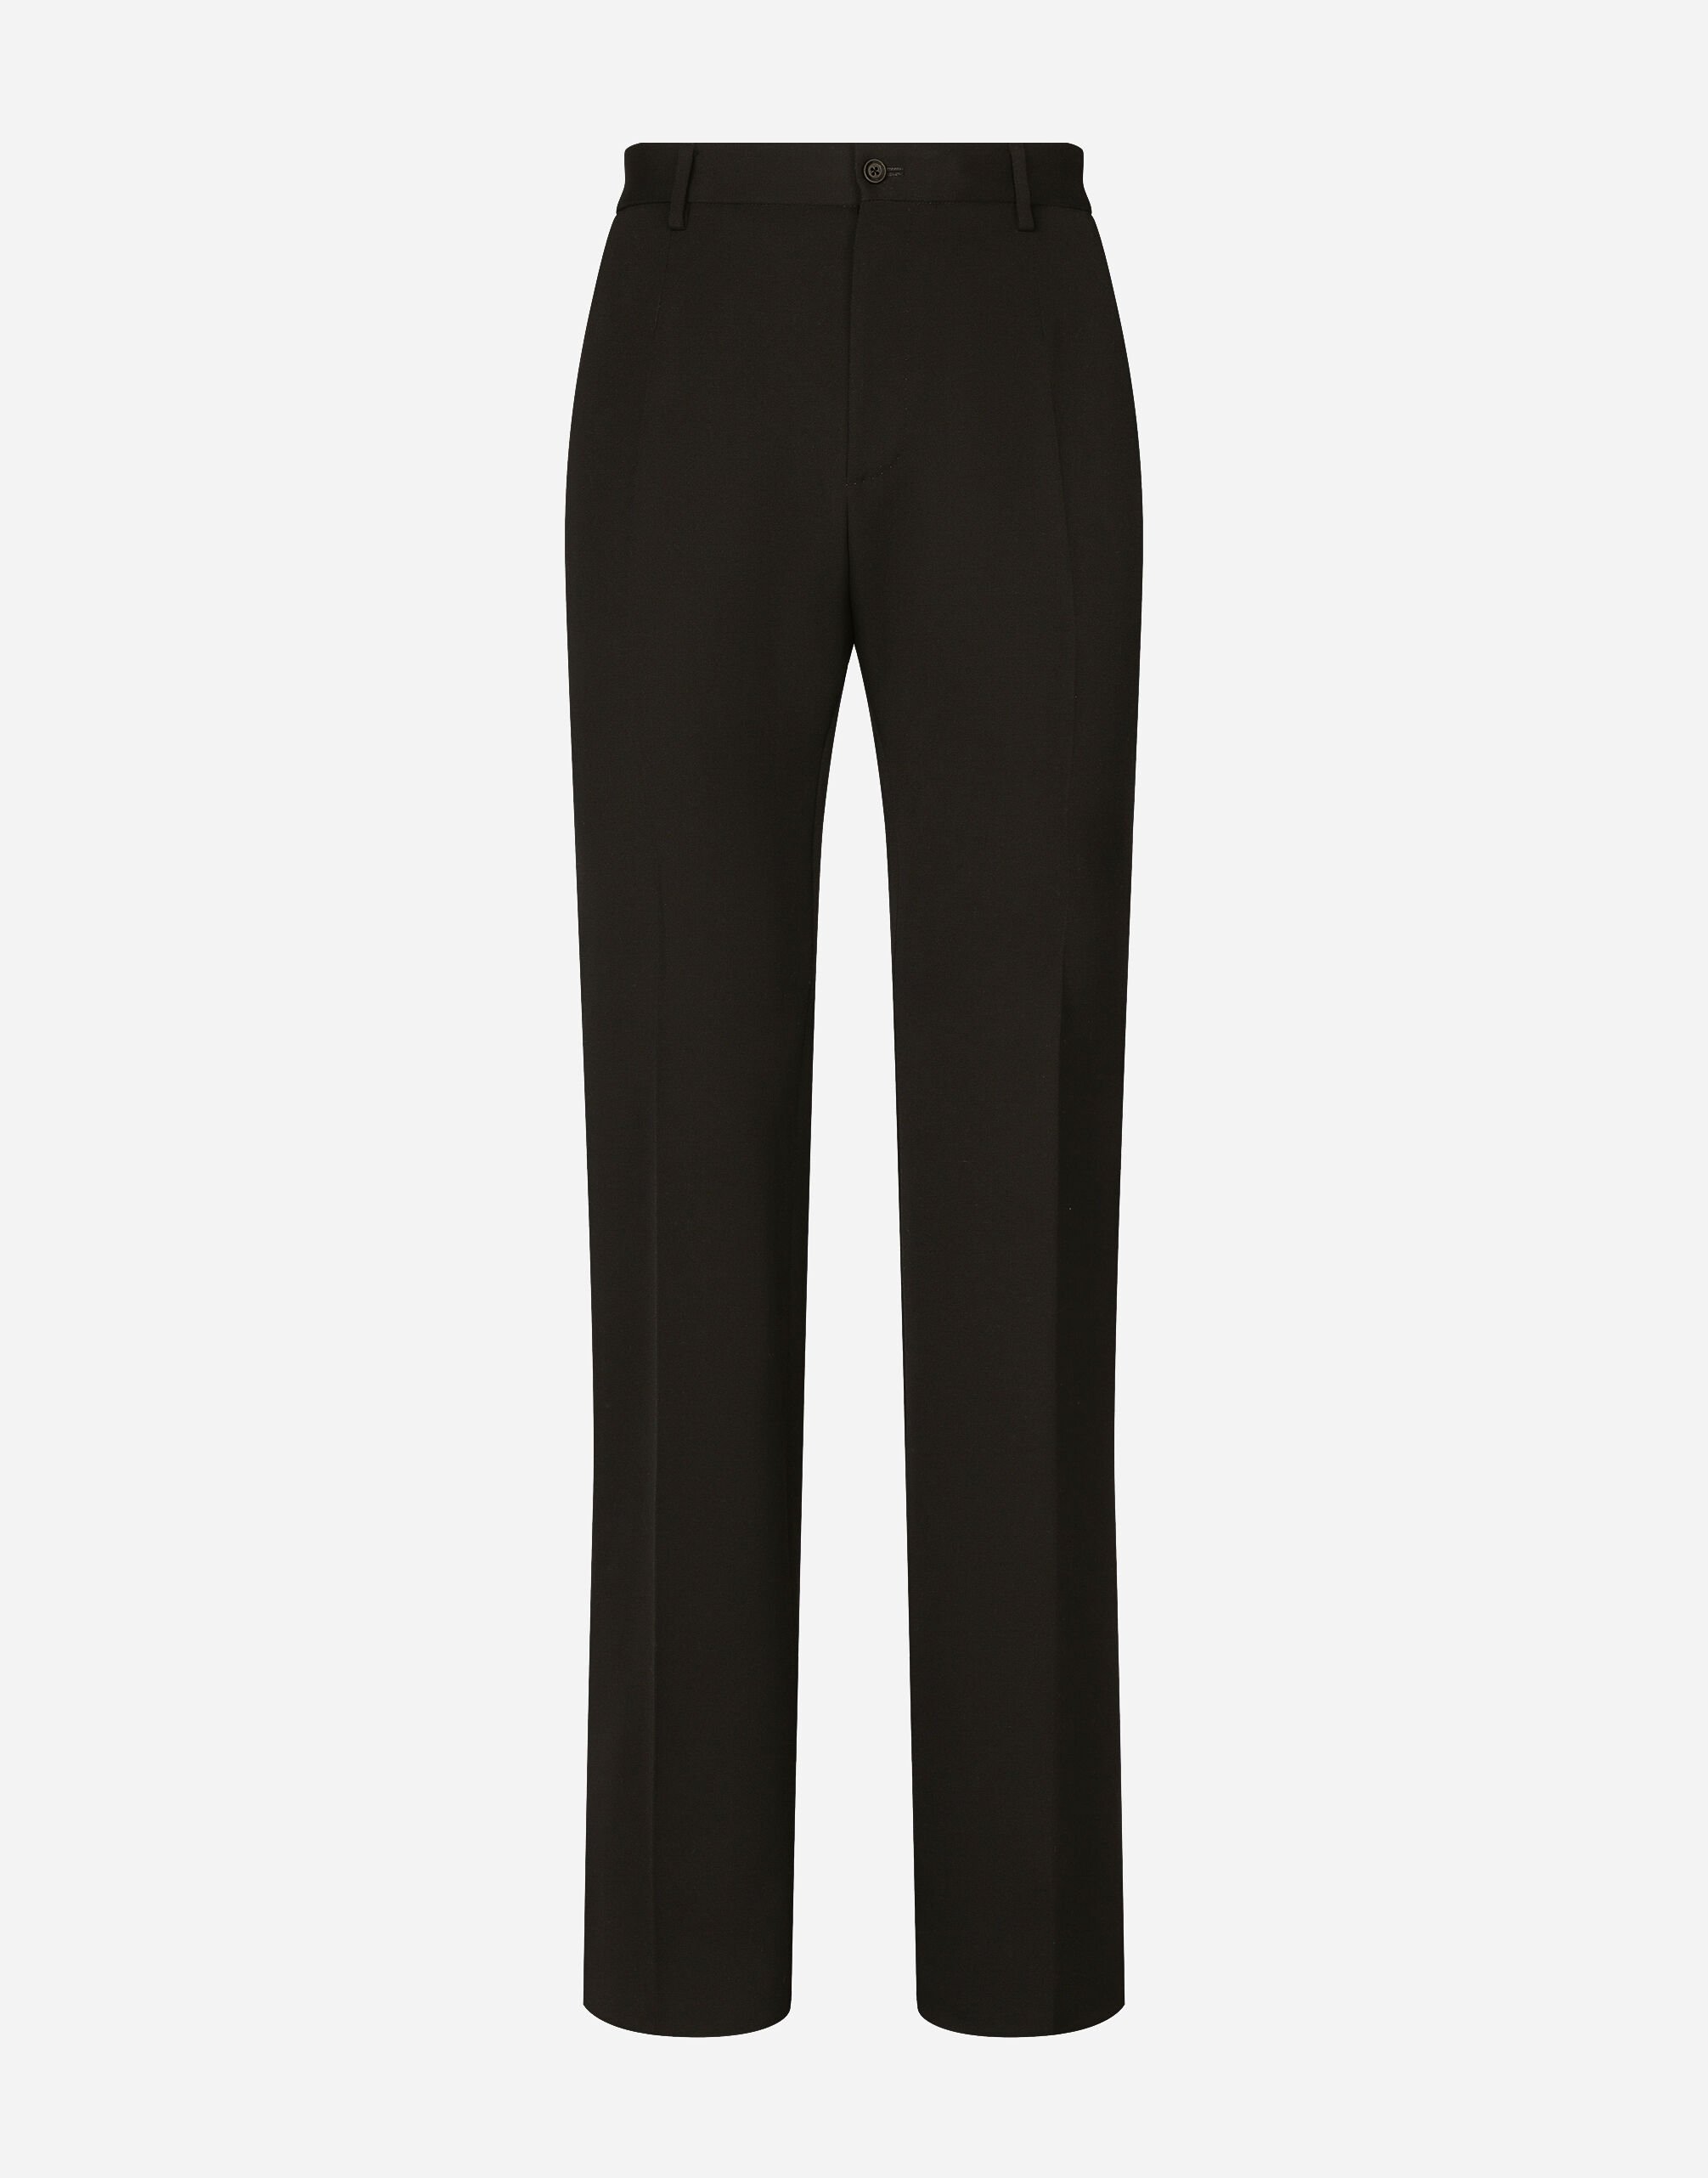 Dolce & Gabbana سروال صوف جرسي أسود VG446FVP187